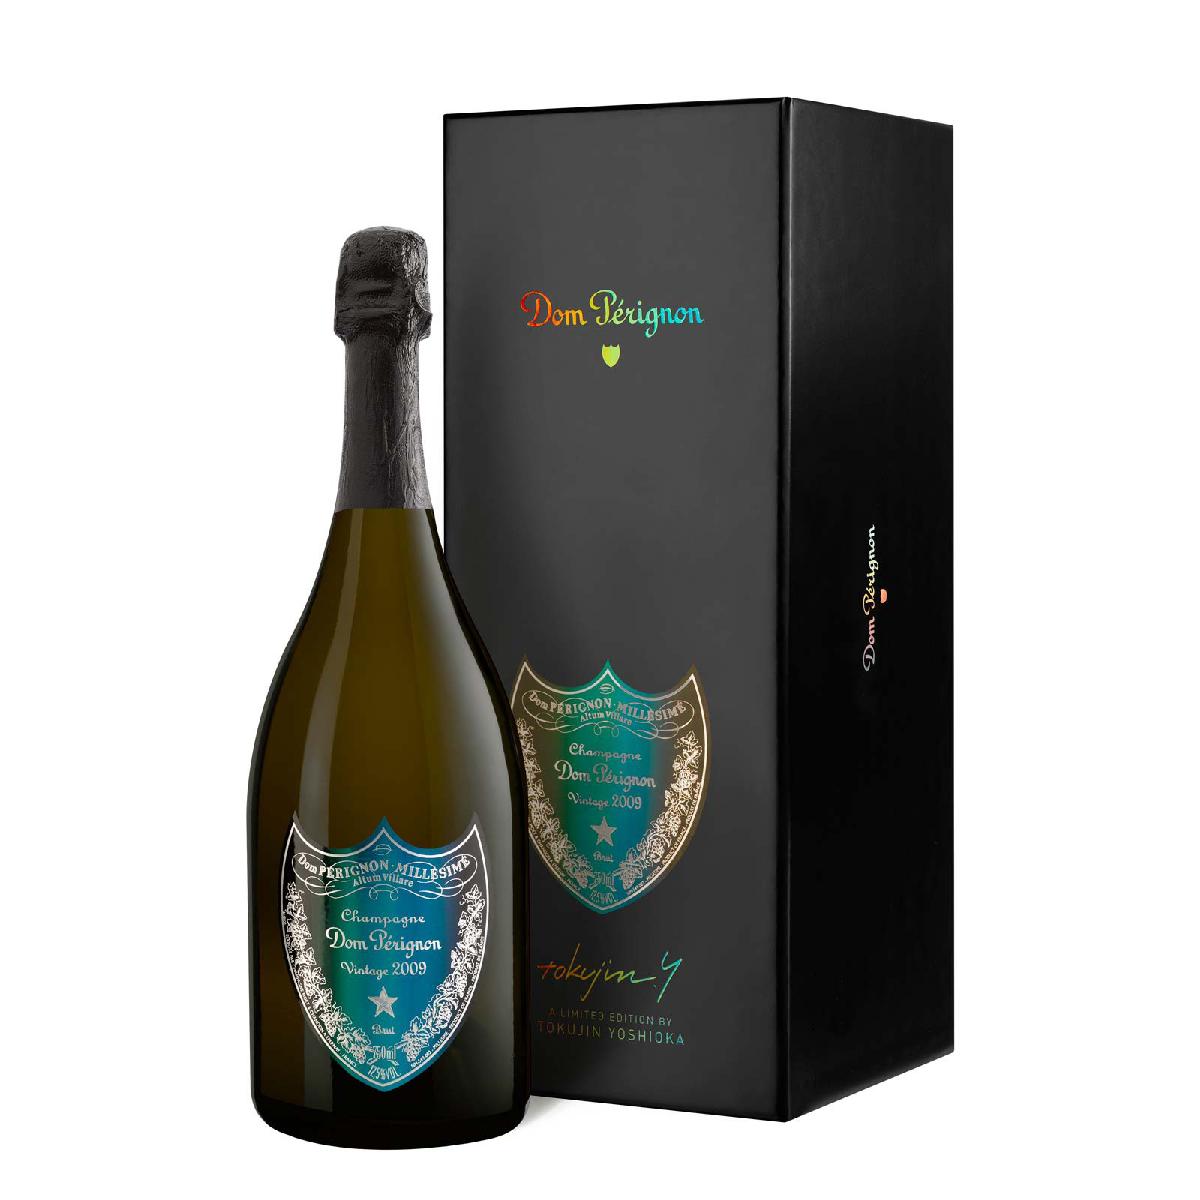 Dom Perignon Champagne Specification & Price In Nigeria